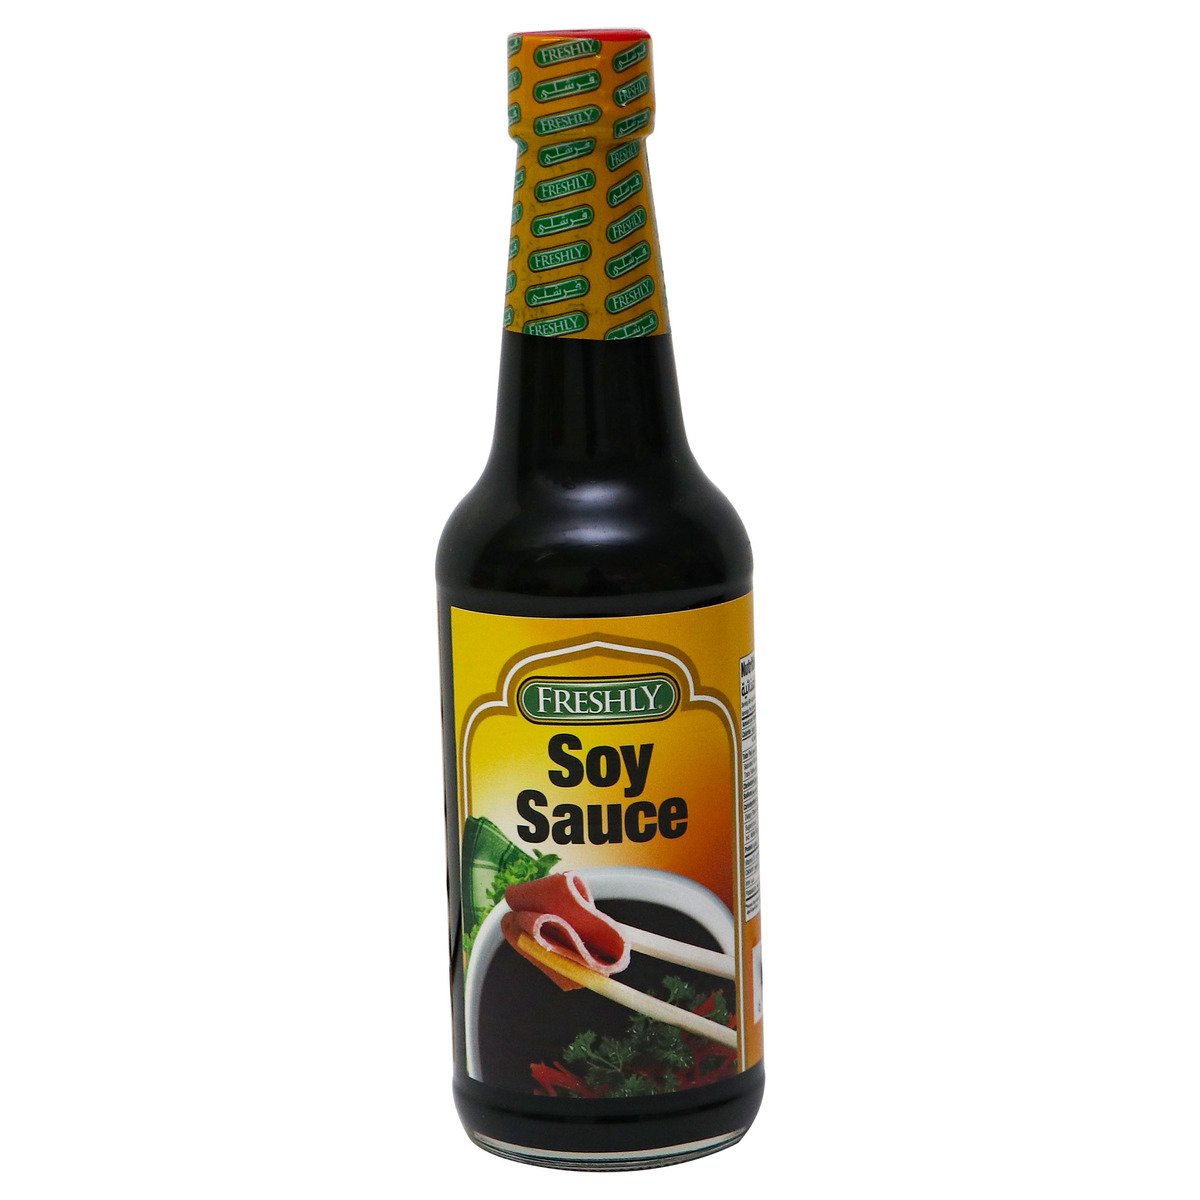 اشتري قم بشراء فرشلي صلصة الصويا 10 أونصة Online at Best Price من الموقع - من لولو هايبر ماركت Sauces في السعودية